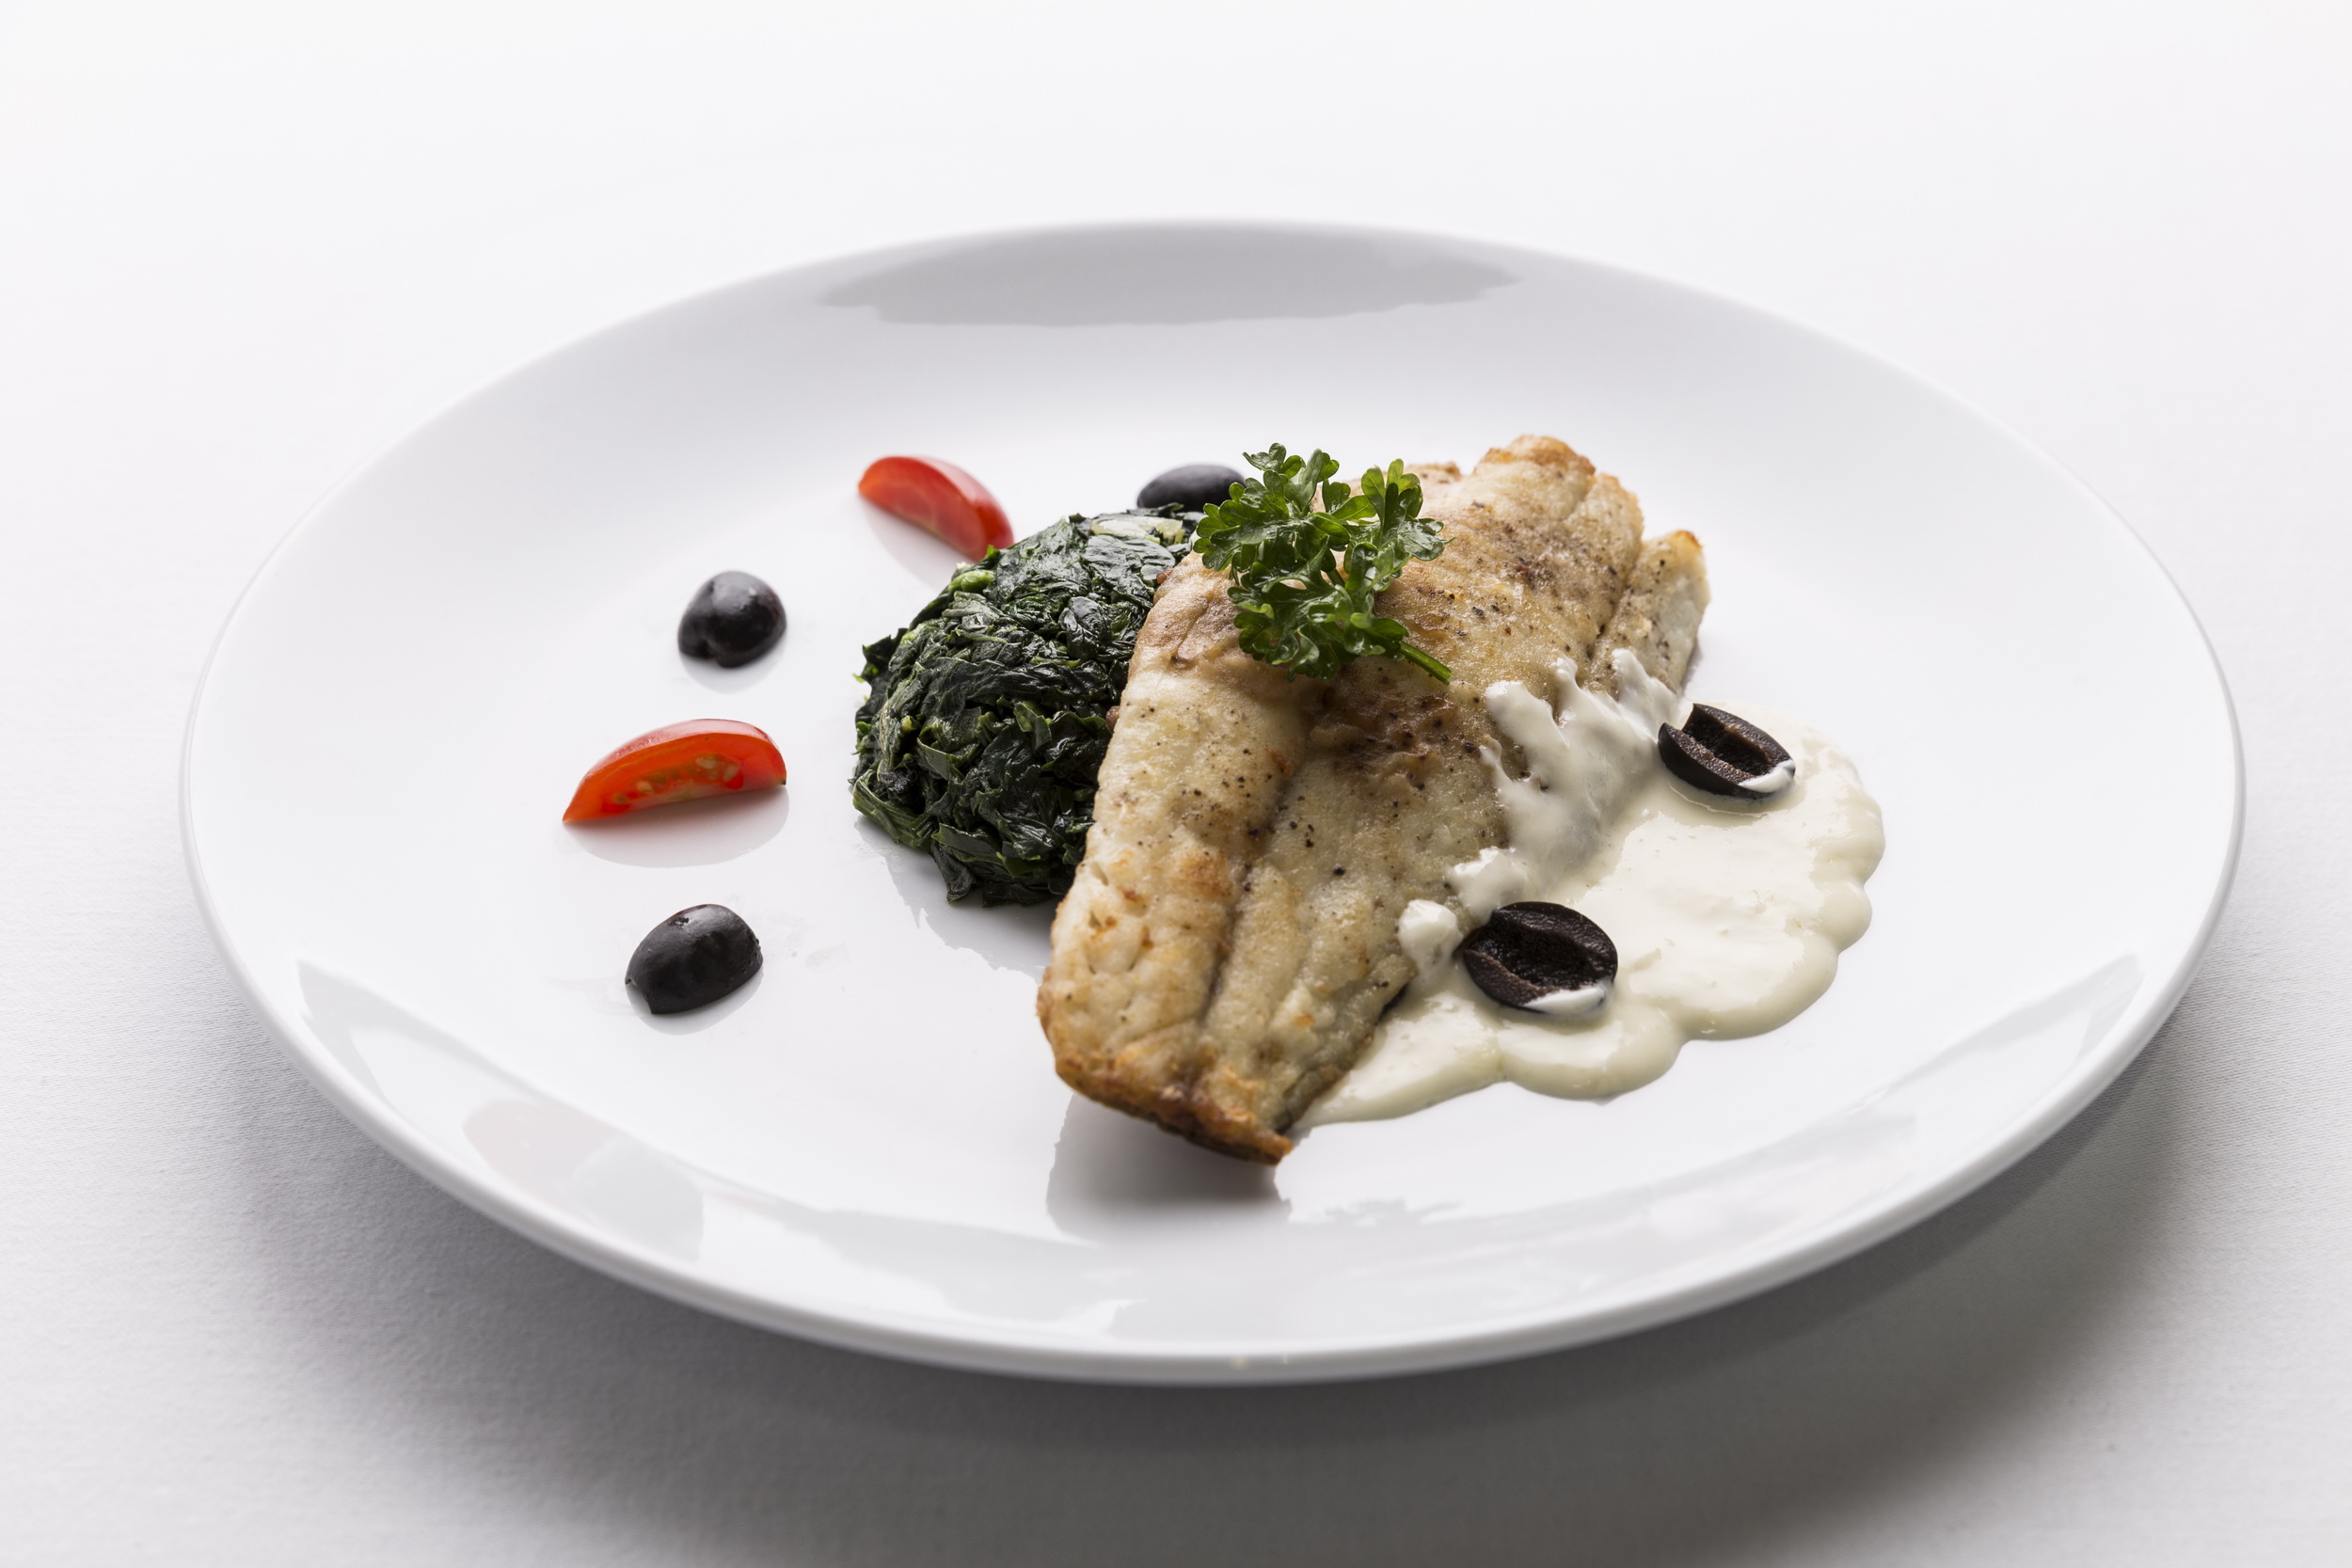 รูปภาพของ เนื้อปลากะพงทอดเสิร์ฟกับผักตุ๋น ห้องอาหารเลอ มาแรงน์ โรงแรม เคป ราชา ศรีราชา